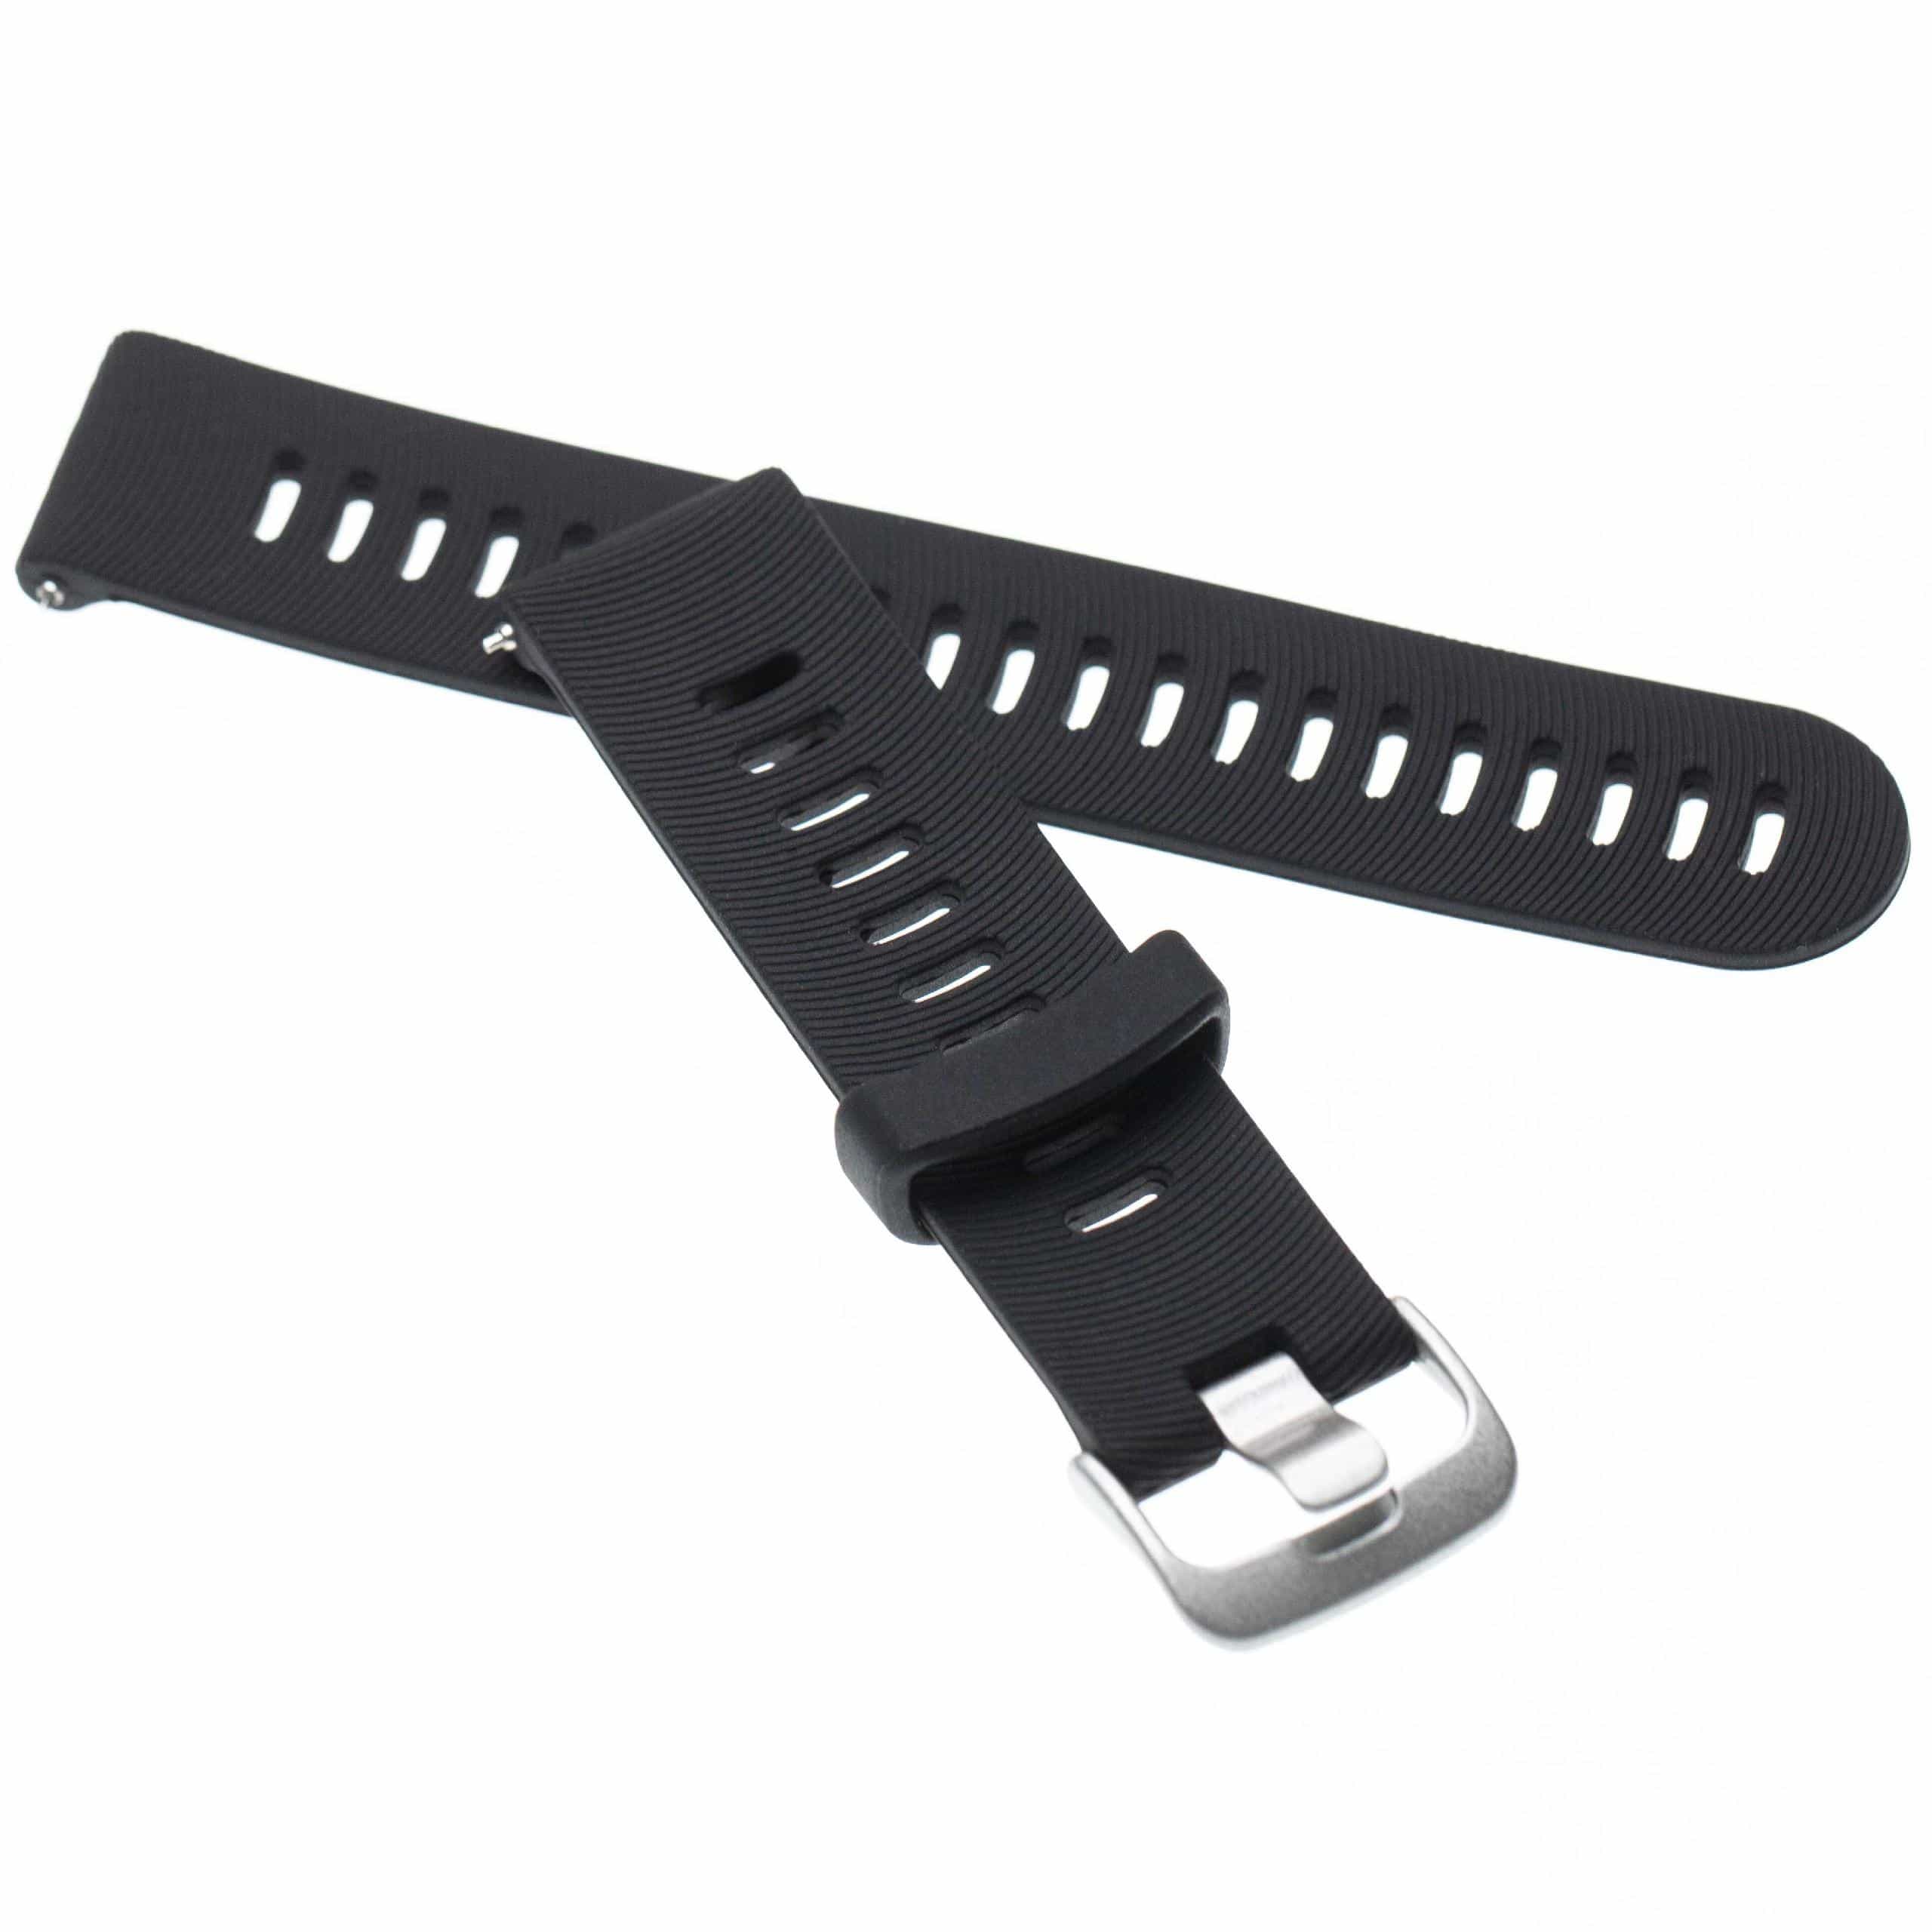 Armband für Garmin Forerunner Smartwatch - 11 + 8,5 cm lang, Silikon, schwarz